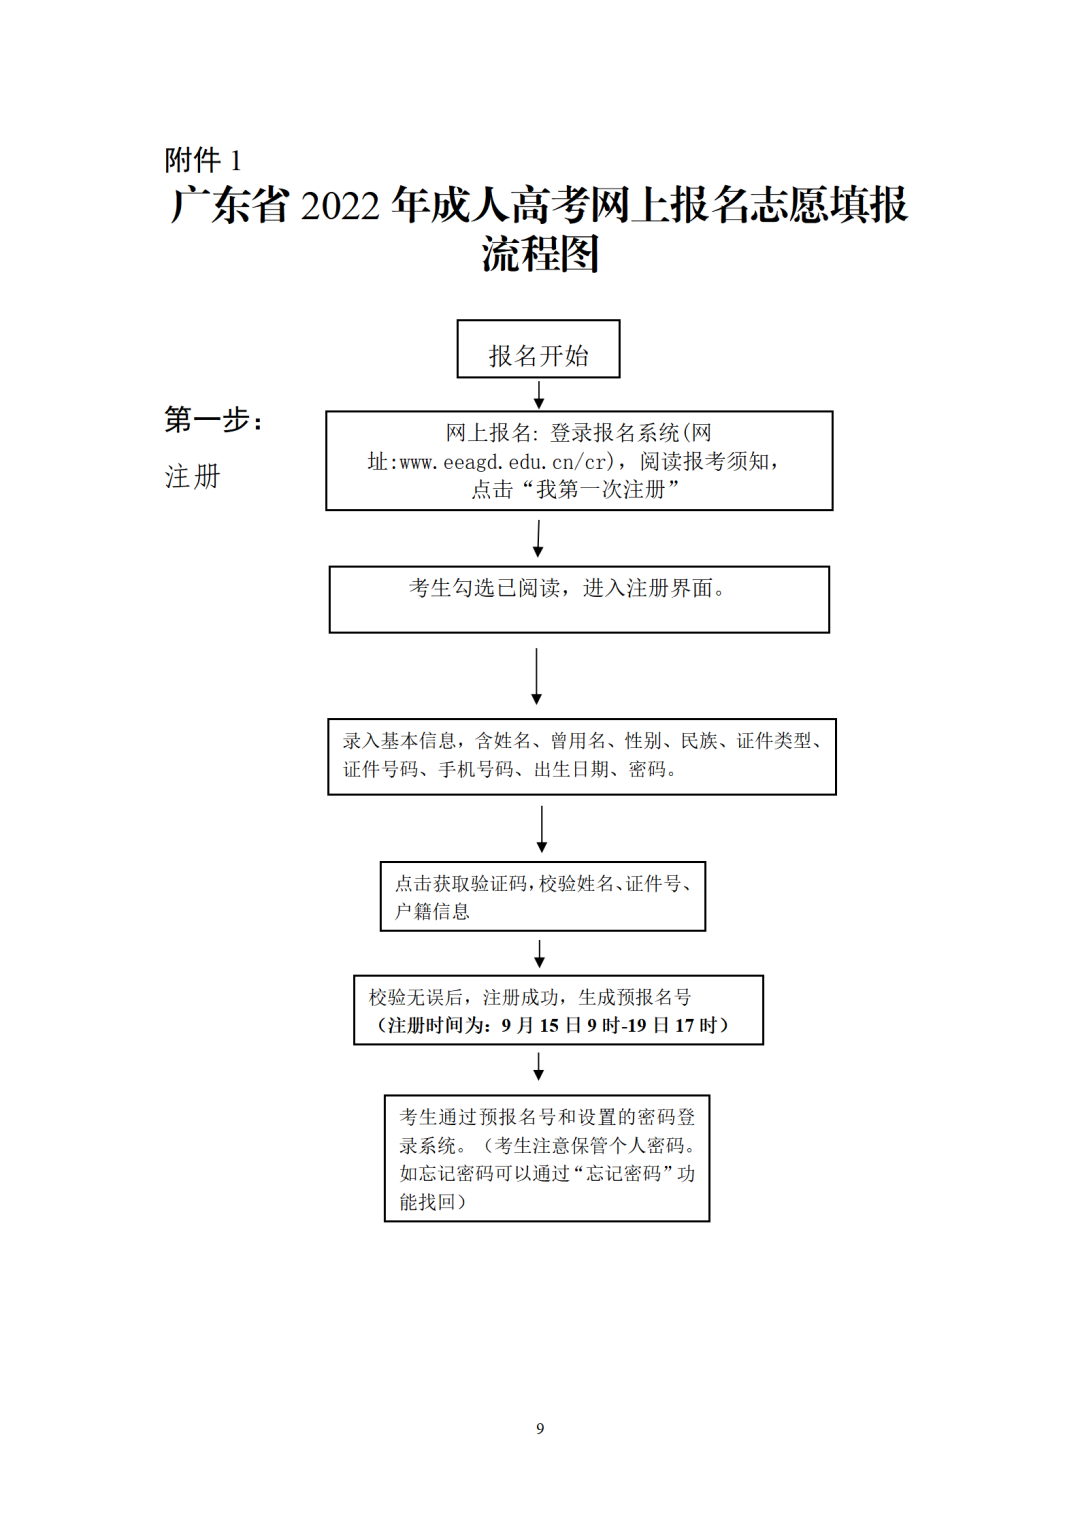 广东省2022年成人高考网上报名志愿填报流程图第一步